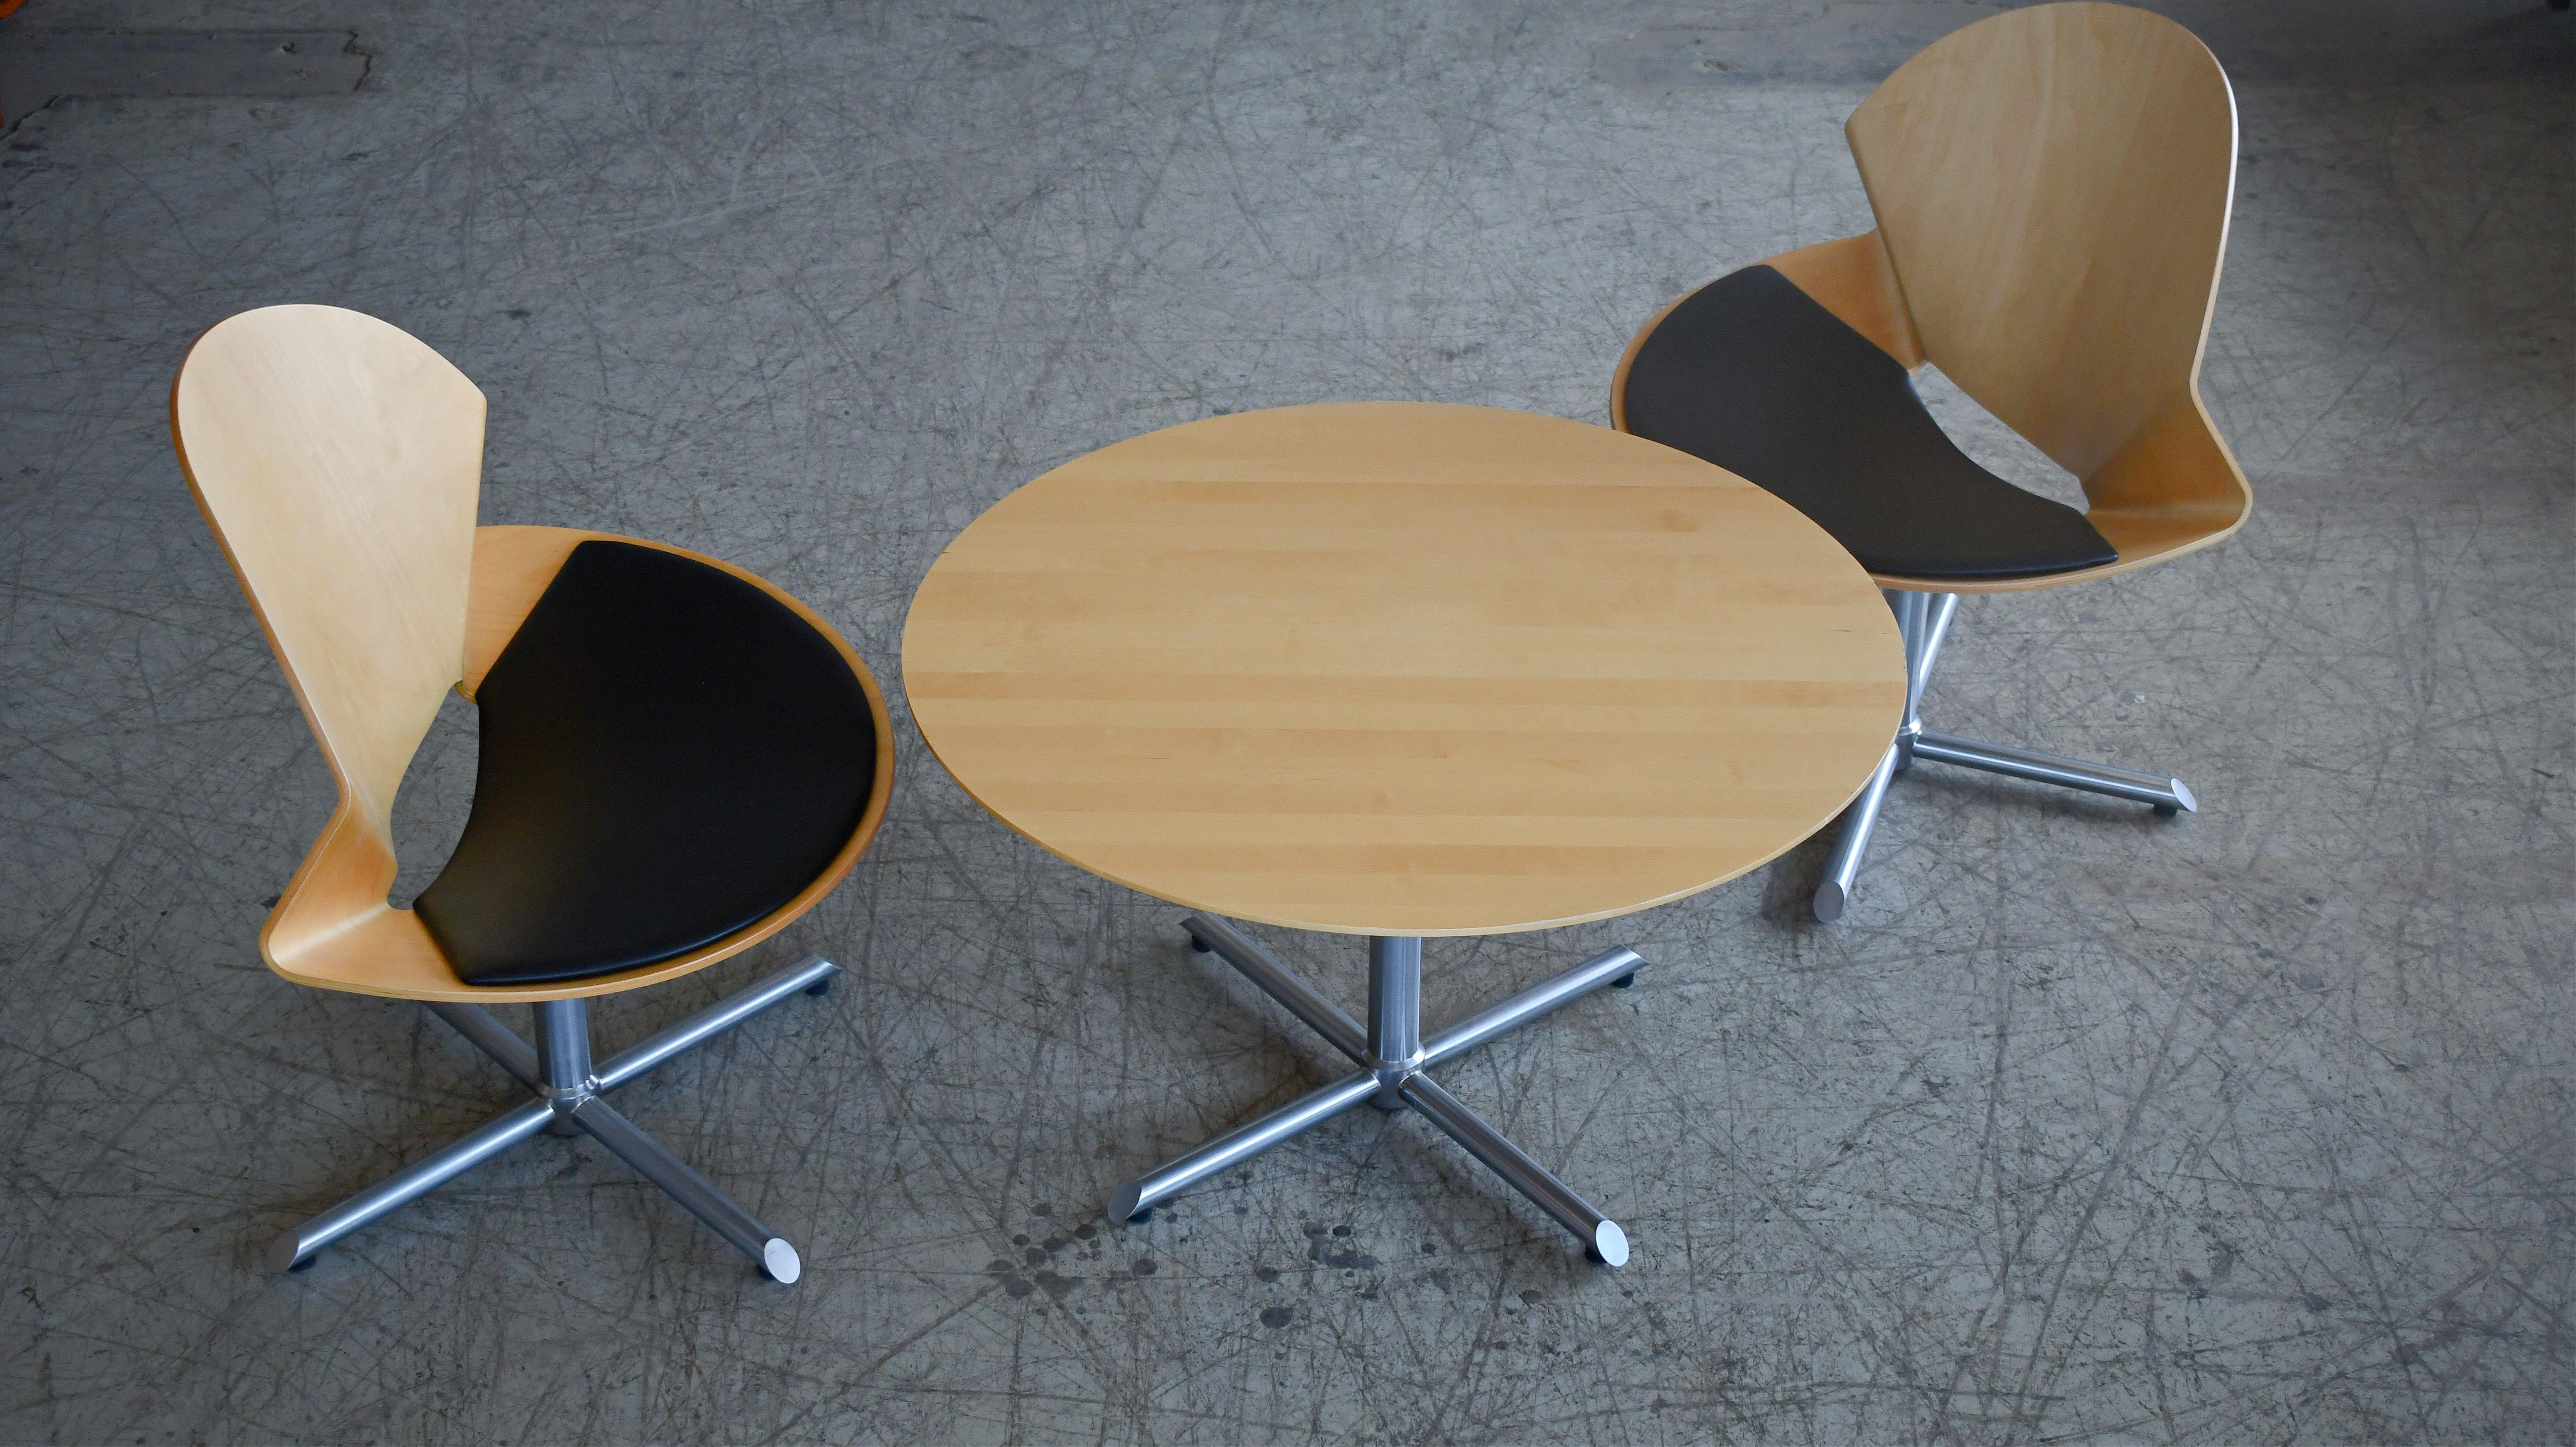 Une paire de chaises longues très cool, modèle Rex, avec une table basse ronde, toutes conçues par Christina Strand et fabriquées par le célèbre fabricant de meubles danois, Fredericia Mobler. Le modèle de chaise a été conçu en 2002 et fabriqué à